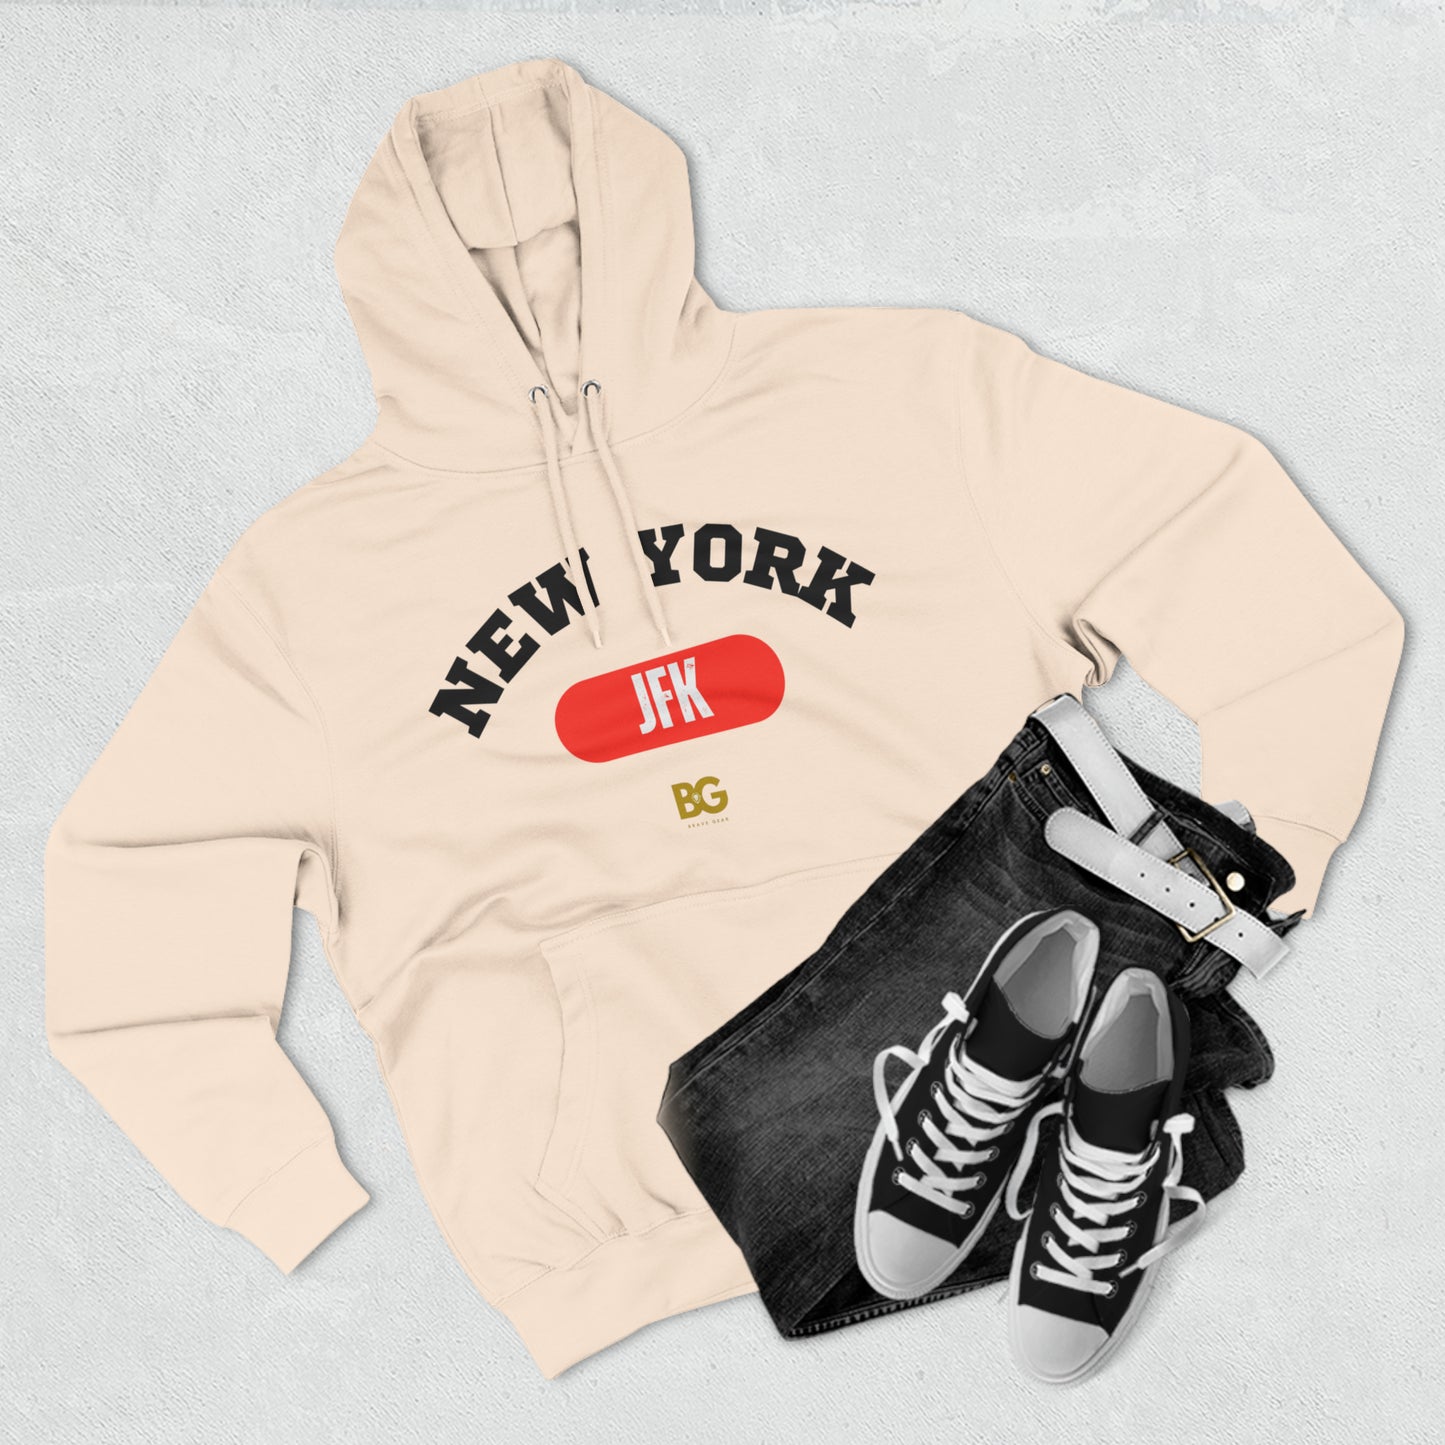 BG "New York JFK" Premium Pullover Hoodie